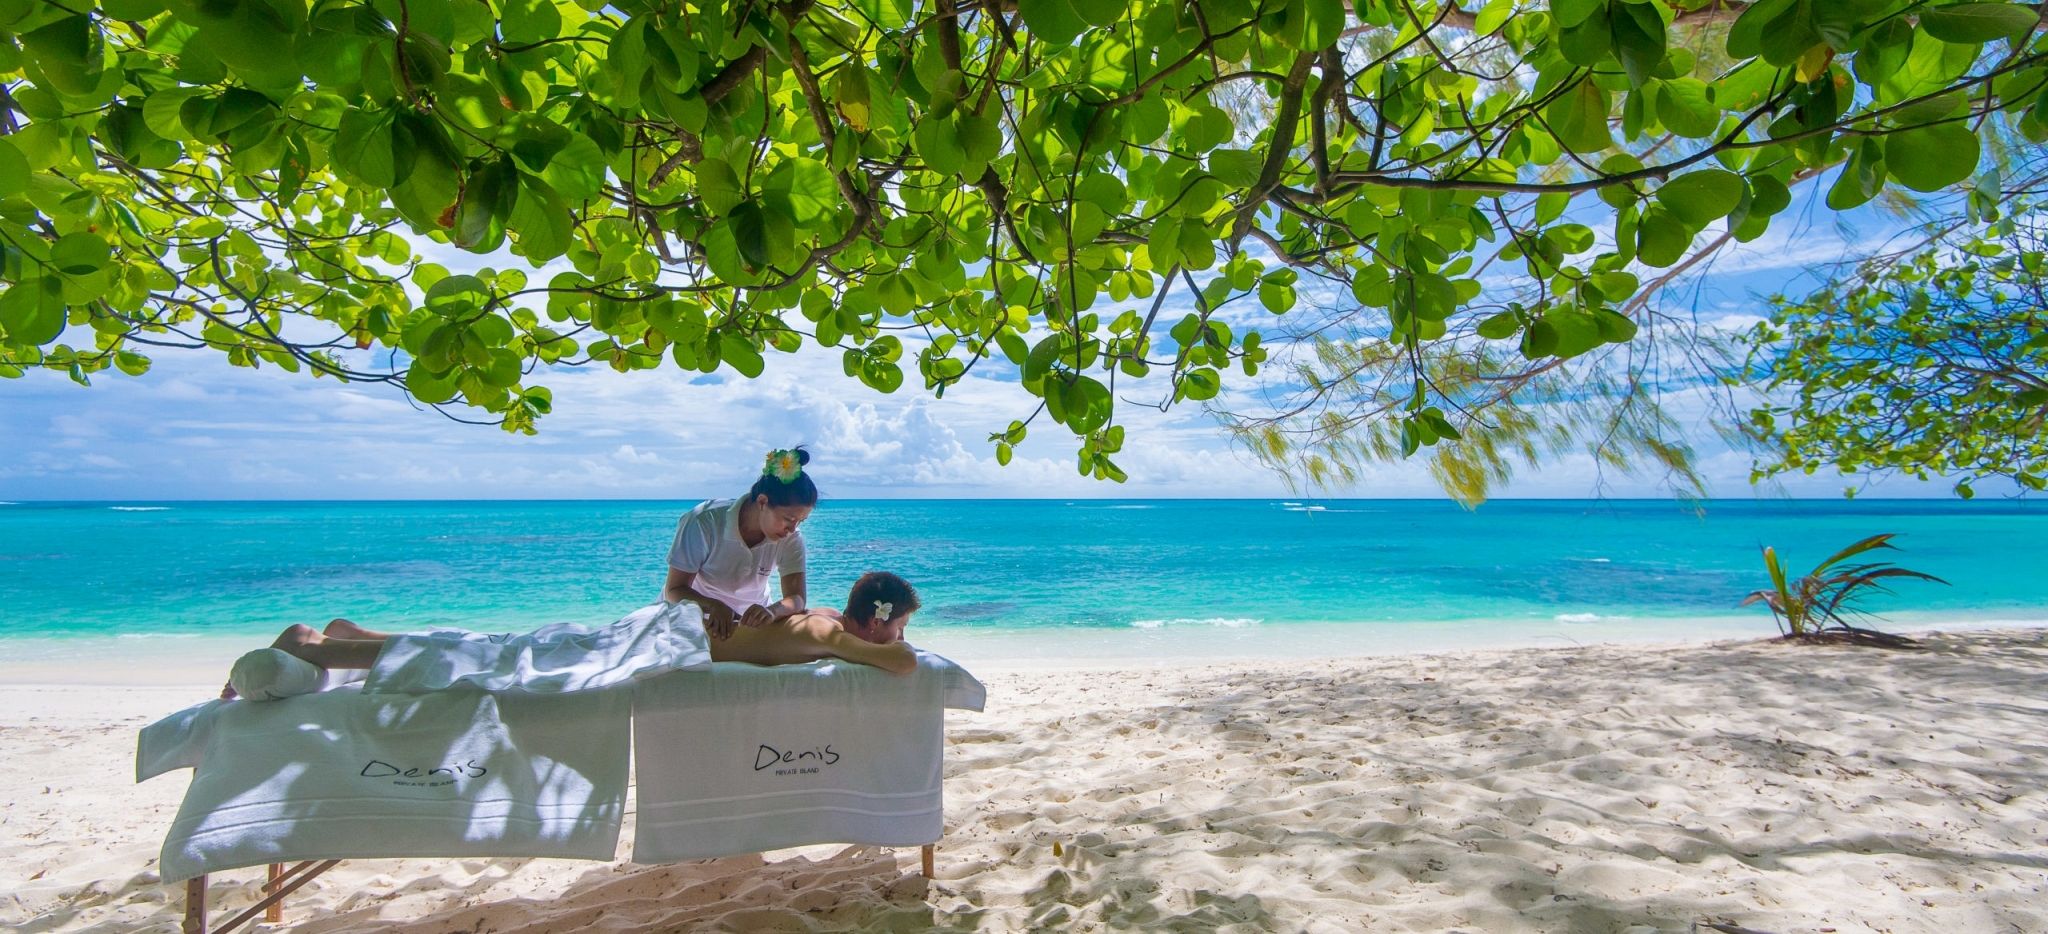 Eine Massage unter einem Takamaka-Baum am Strand auf Denis Island, Seychellen